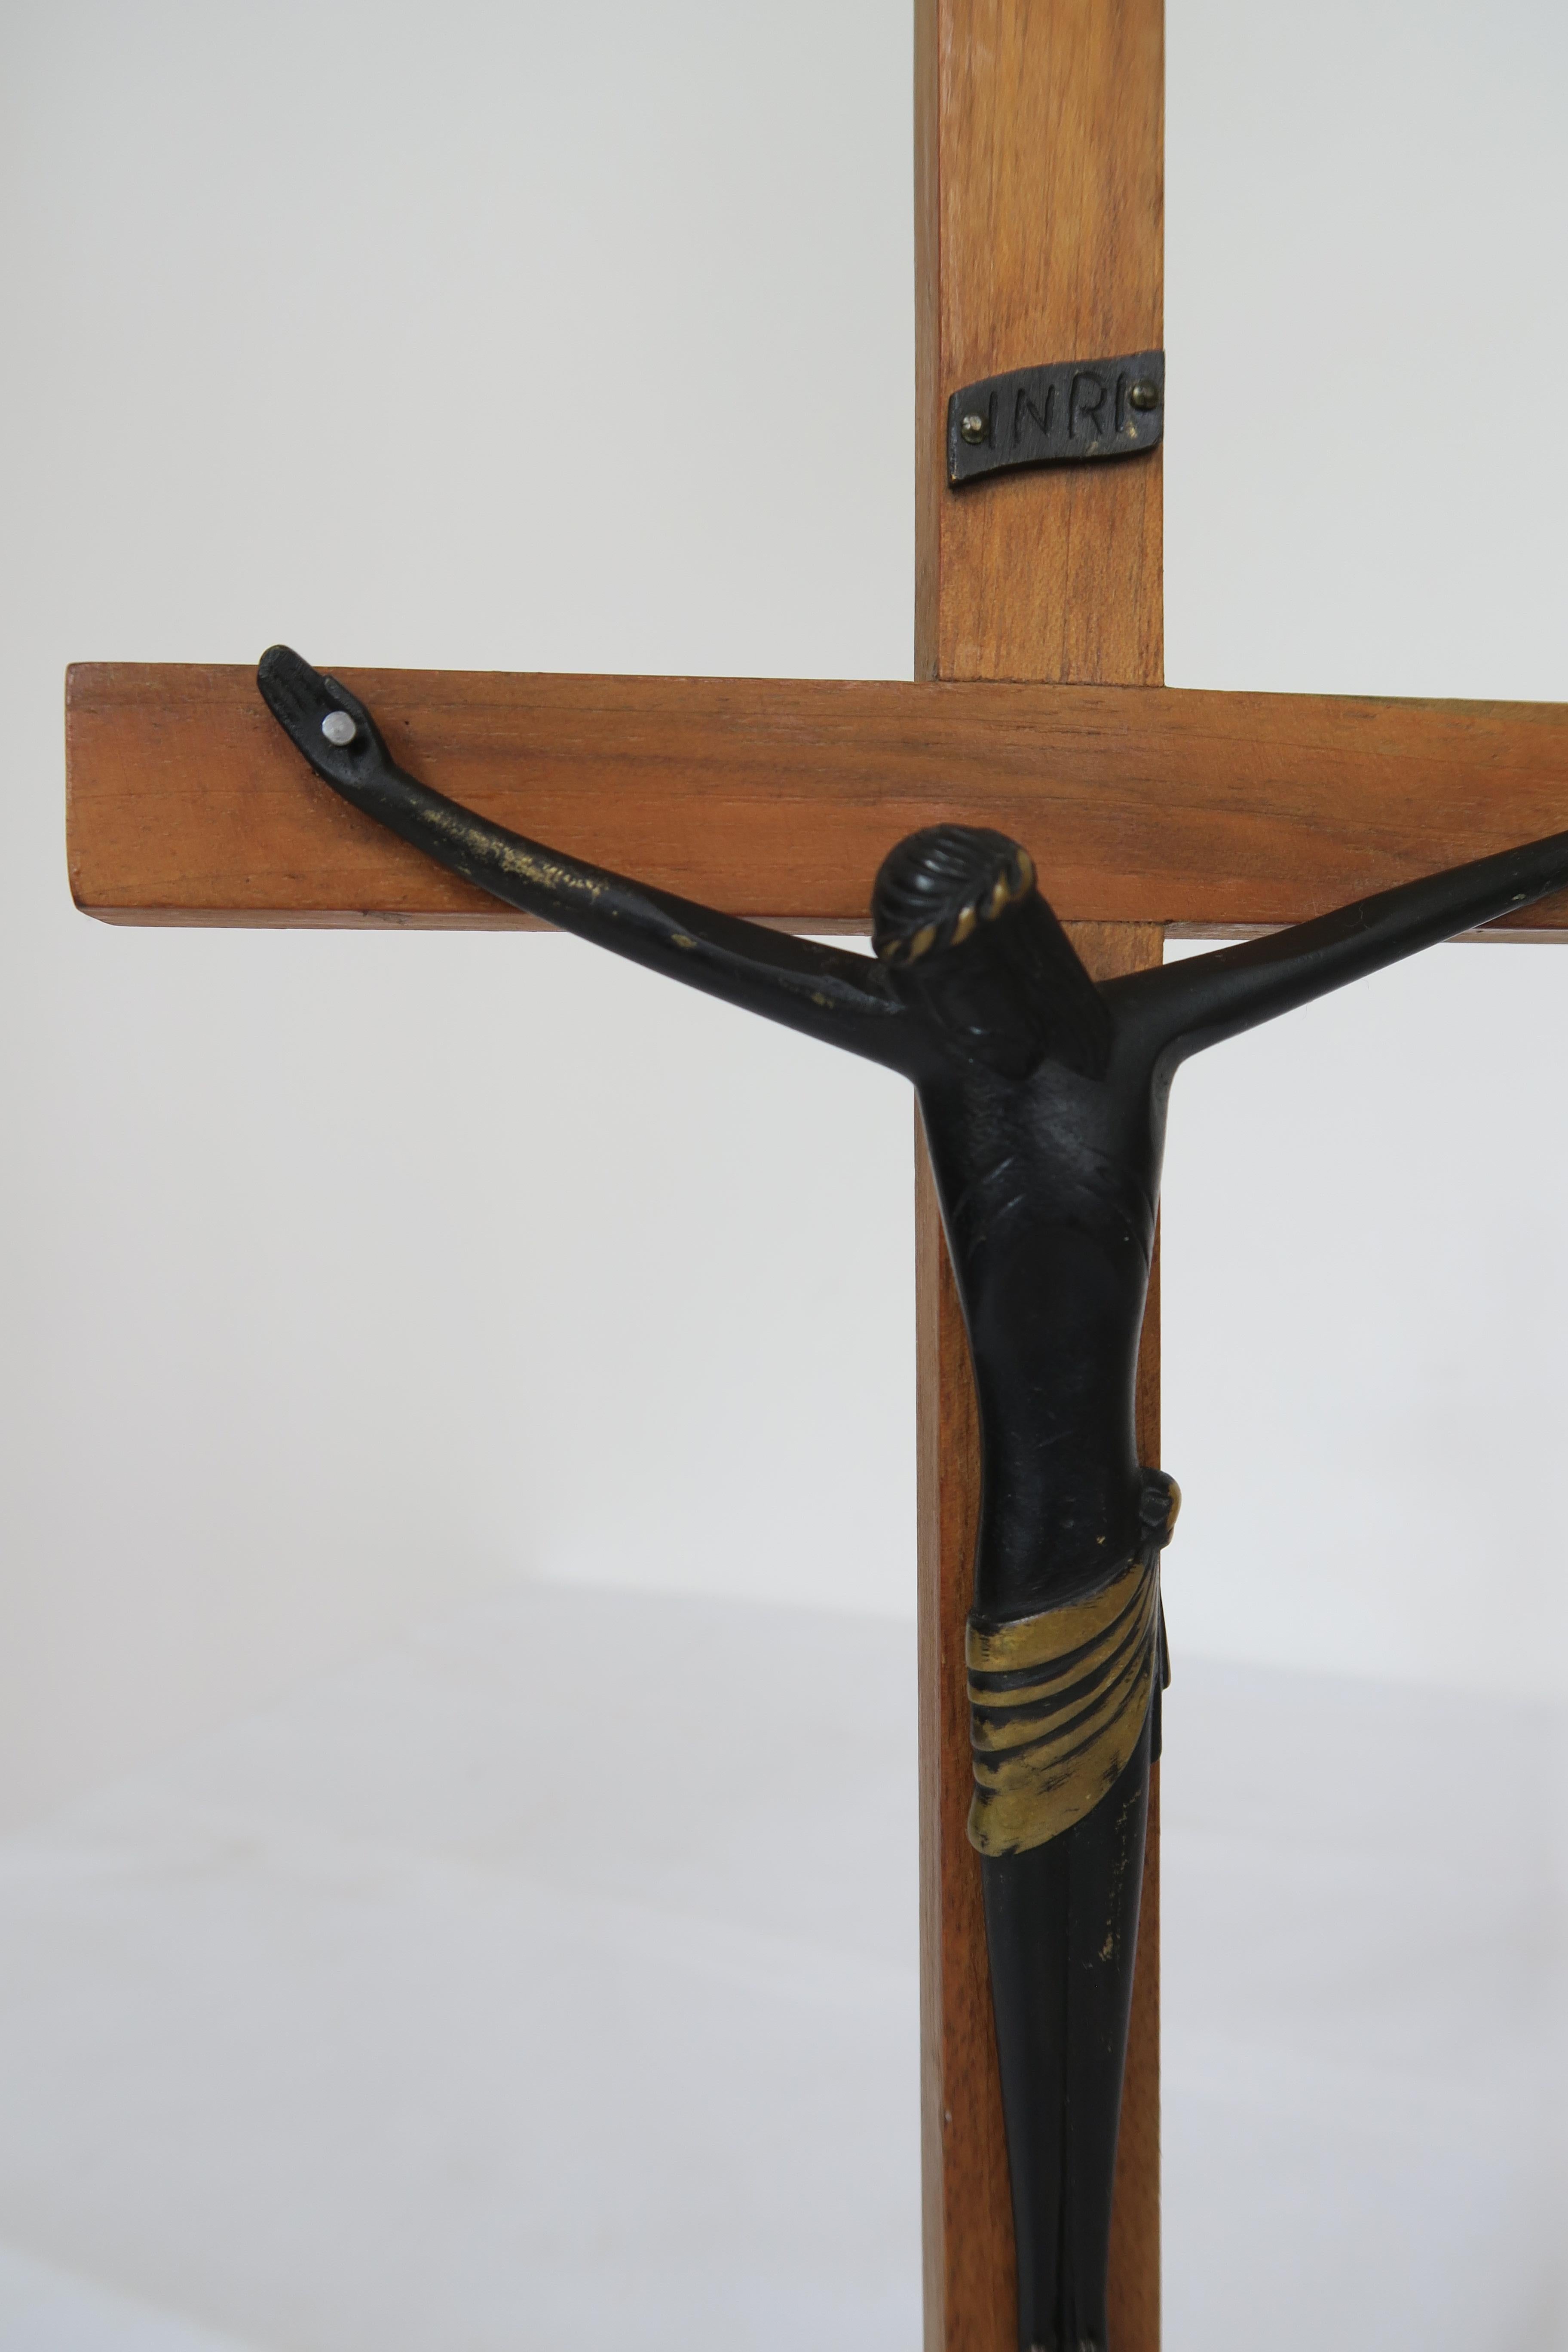 Zum Verkauf steht ein Jesus-Fetisch aus der Jahrhundertmitte von der österreichischen Werkstätte Hagenauer Wien. Das Kreuz ist aus schönem, warm getöntem Nussbaumholz gefertigt und leicht lackiert. Die Jesus-Figur ist aus gebranntem Messing